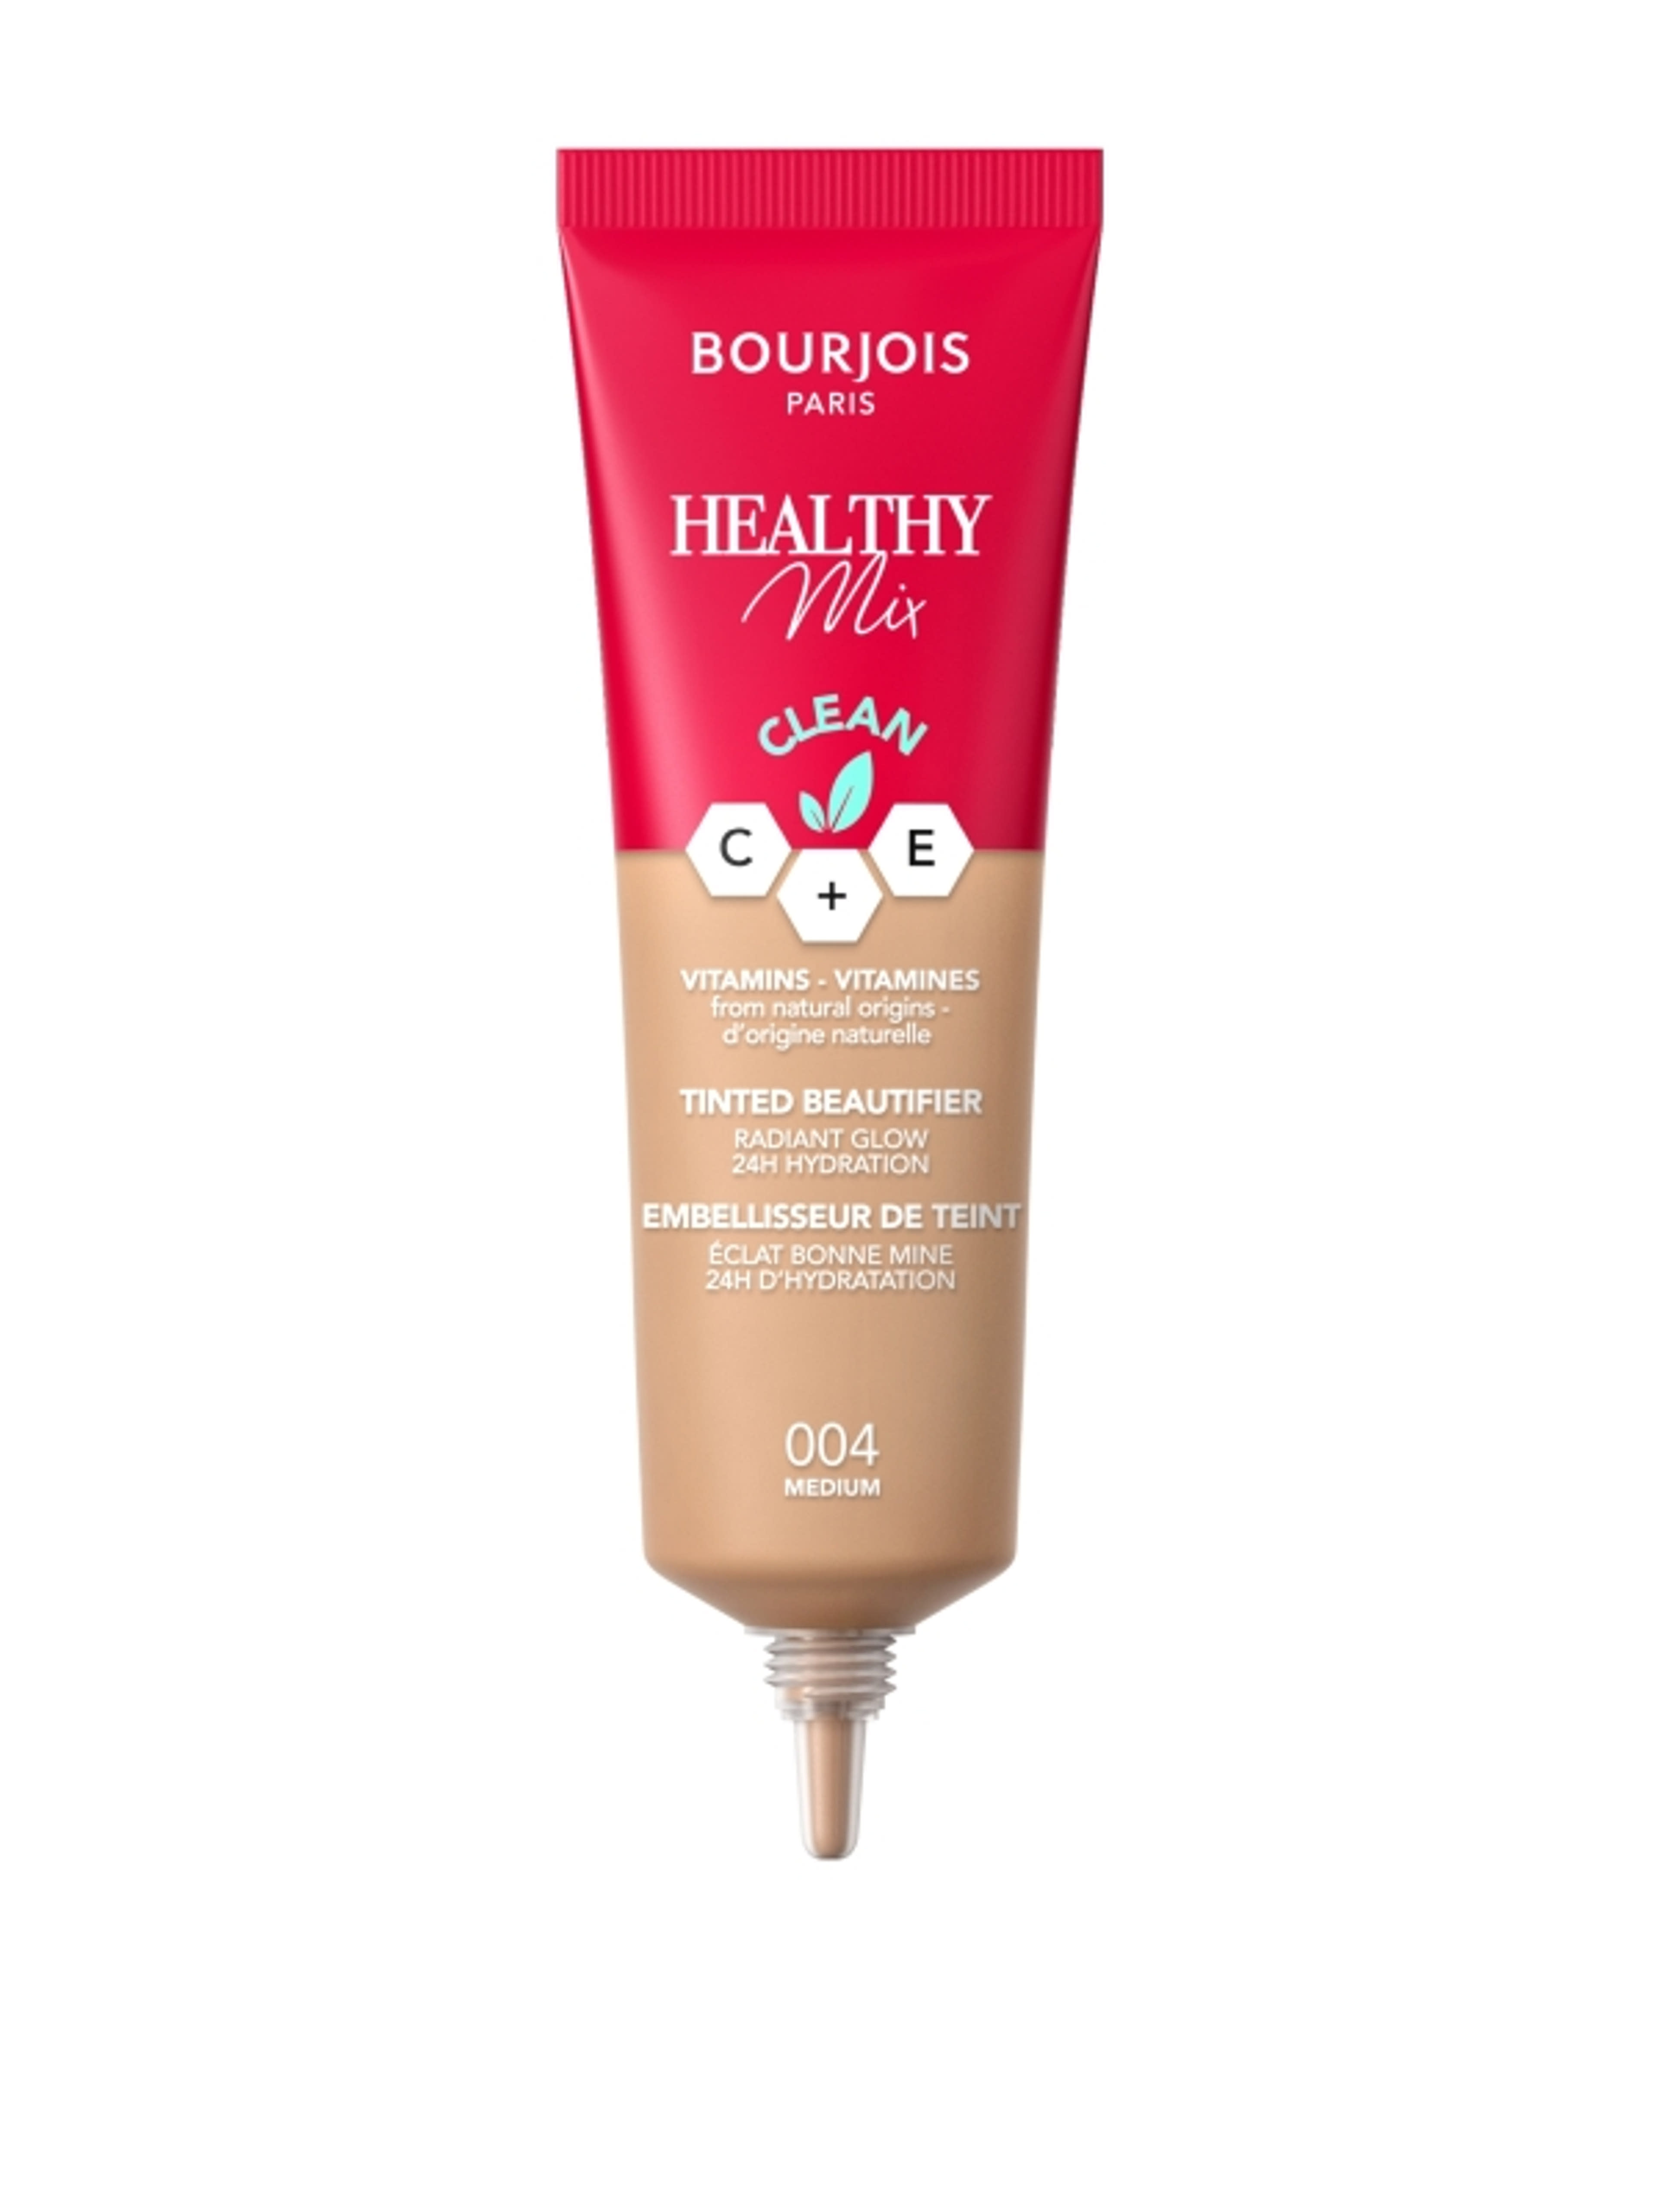 Bourjois Healthy Mix színezett arckrém /004 - 1 db-2